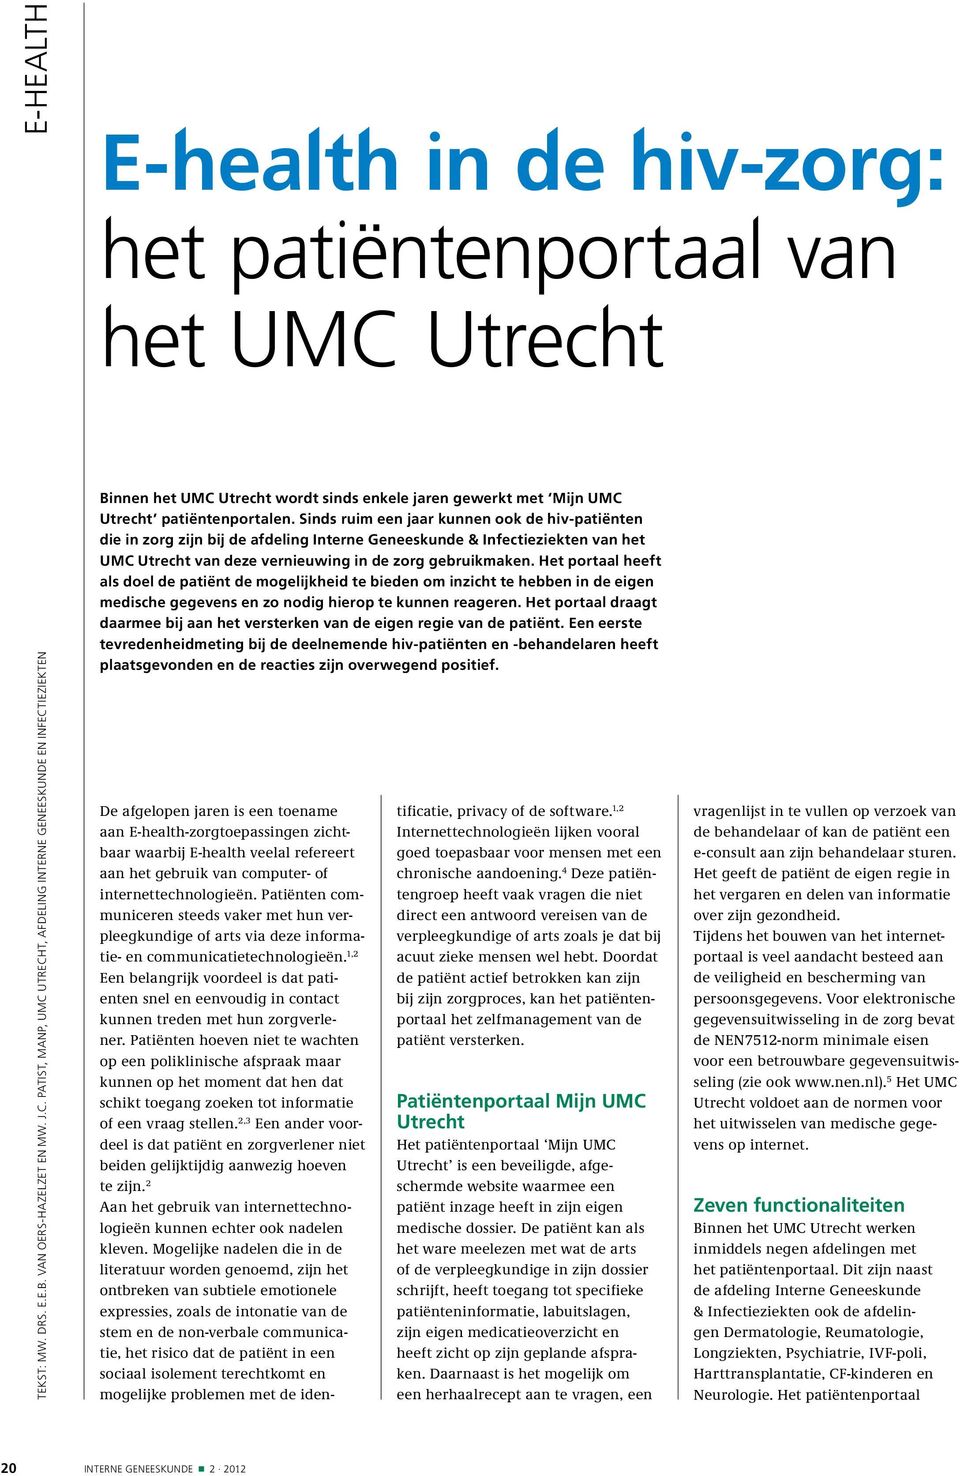 gewerkt met Mijn UMC Utrecht patiëntenportalen.